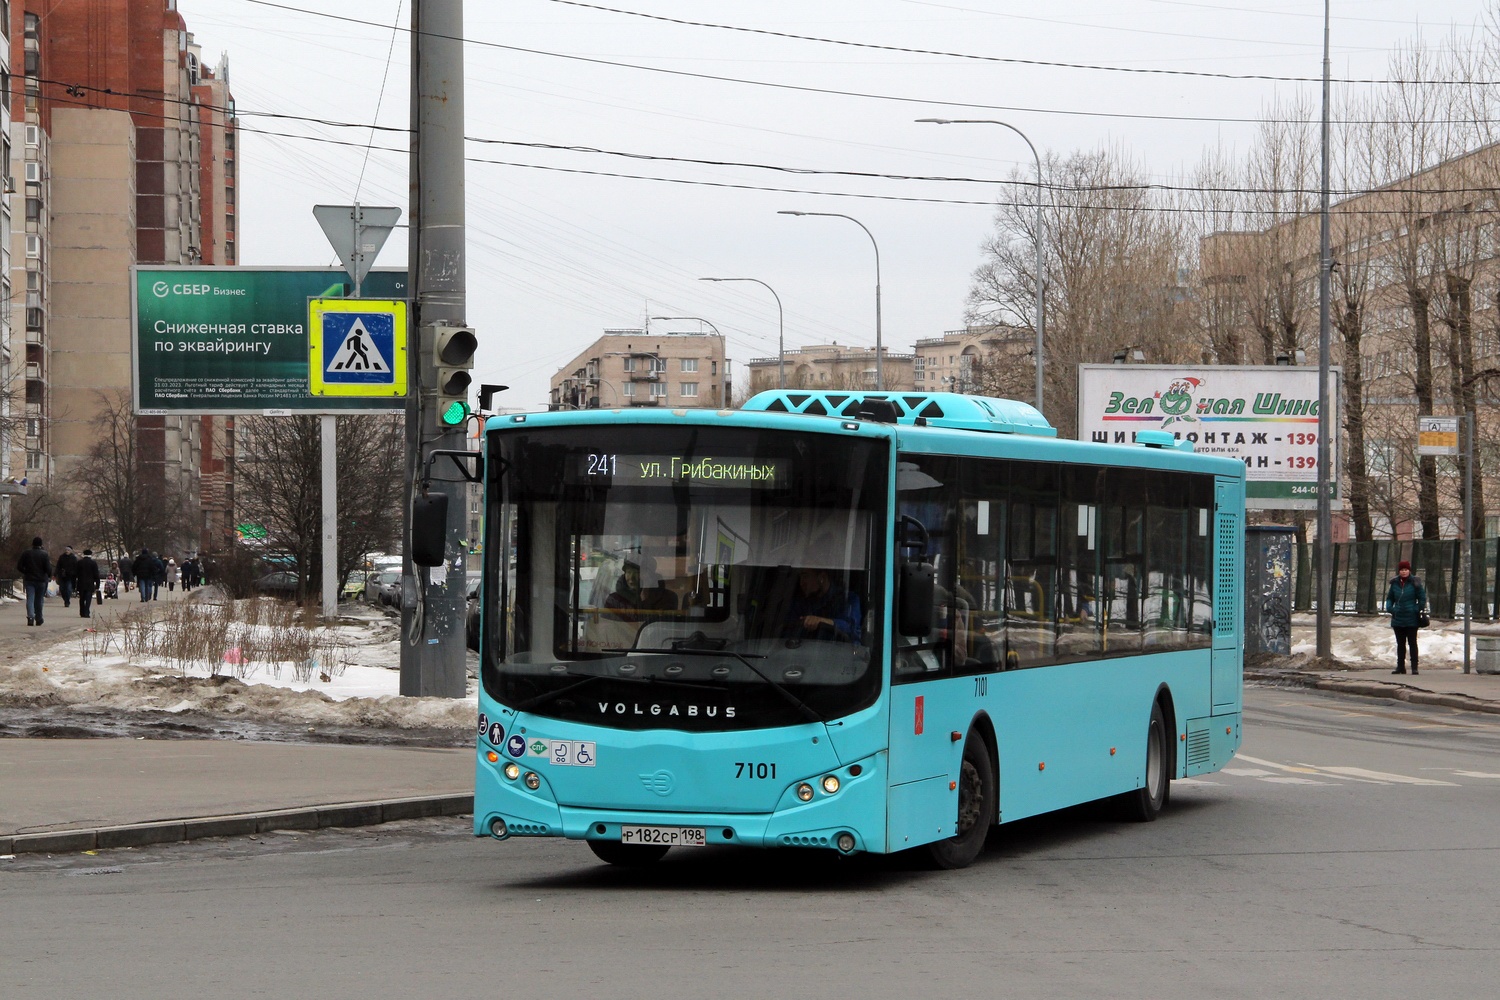 Sankt Peterburgas, Volgabus-5270.G2 (LNG) Nr. 7101